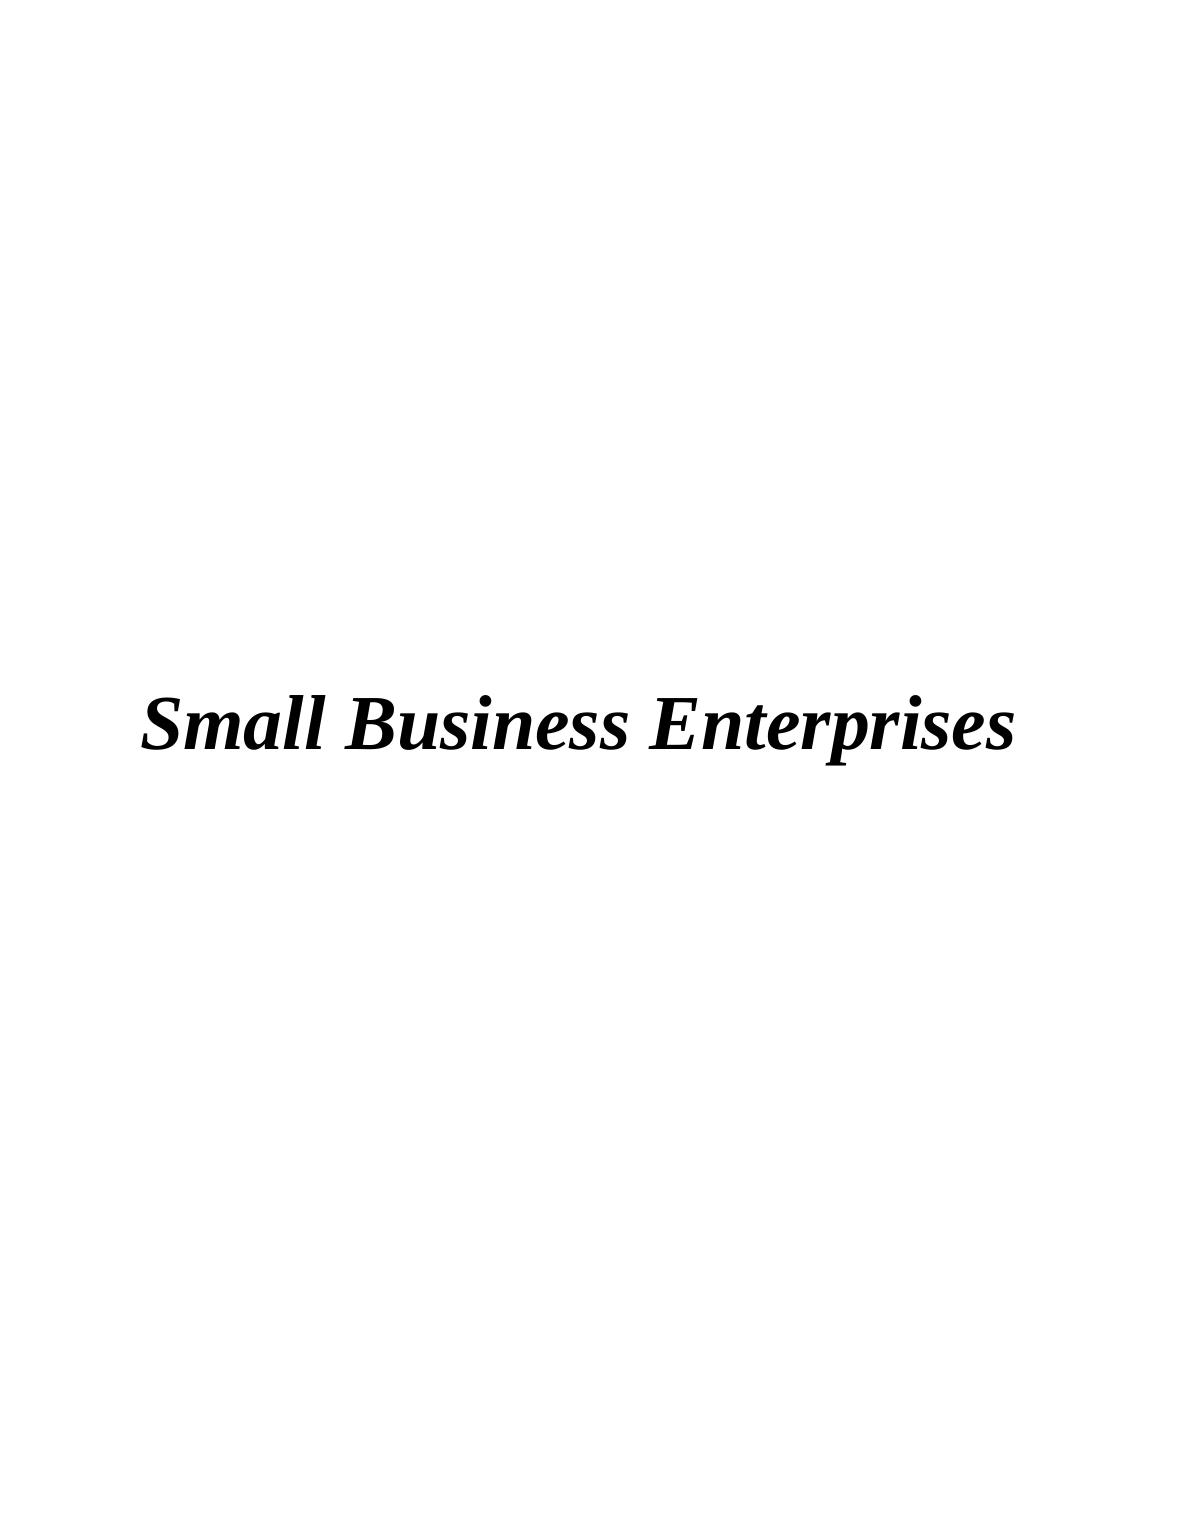 Small Business Enterprise Report - Austin Fraser_1